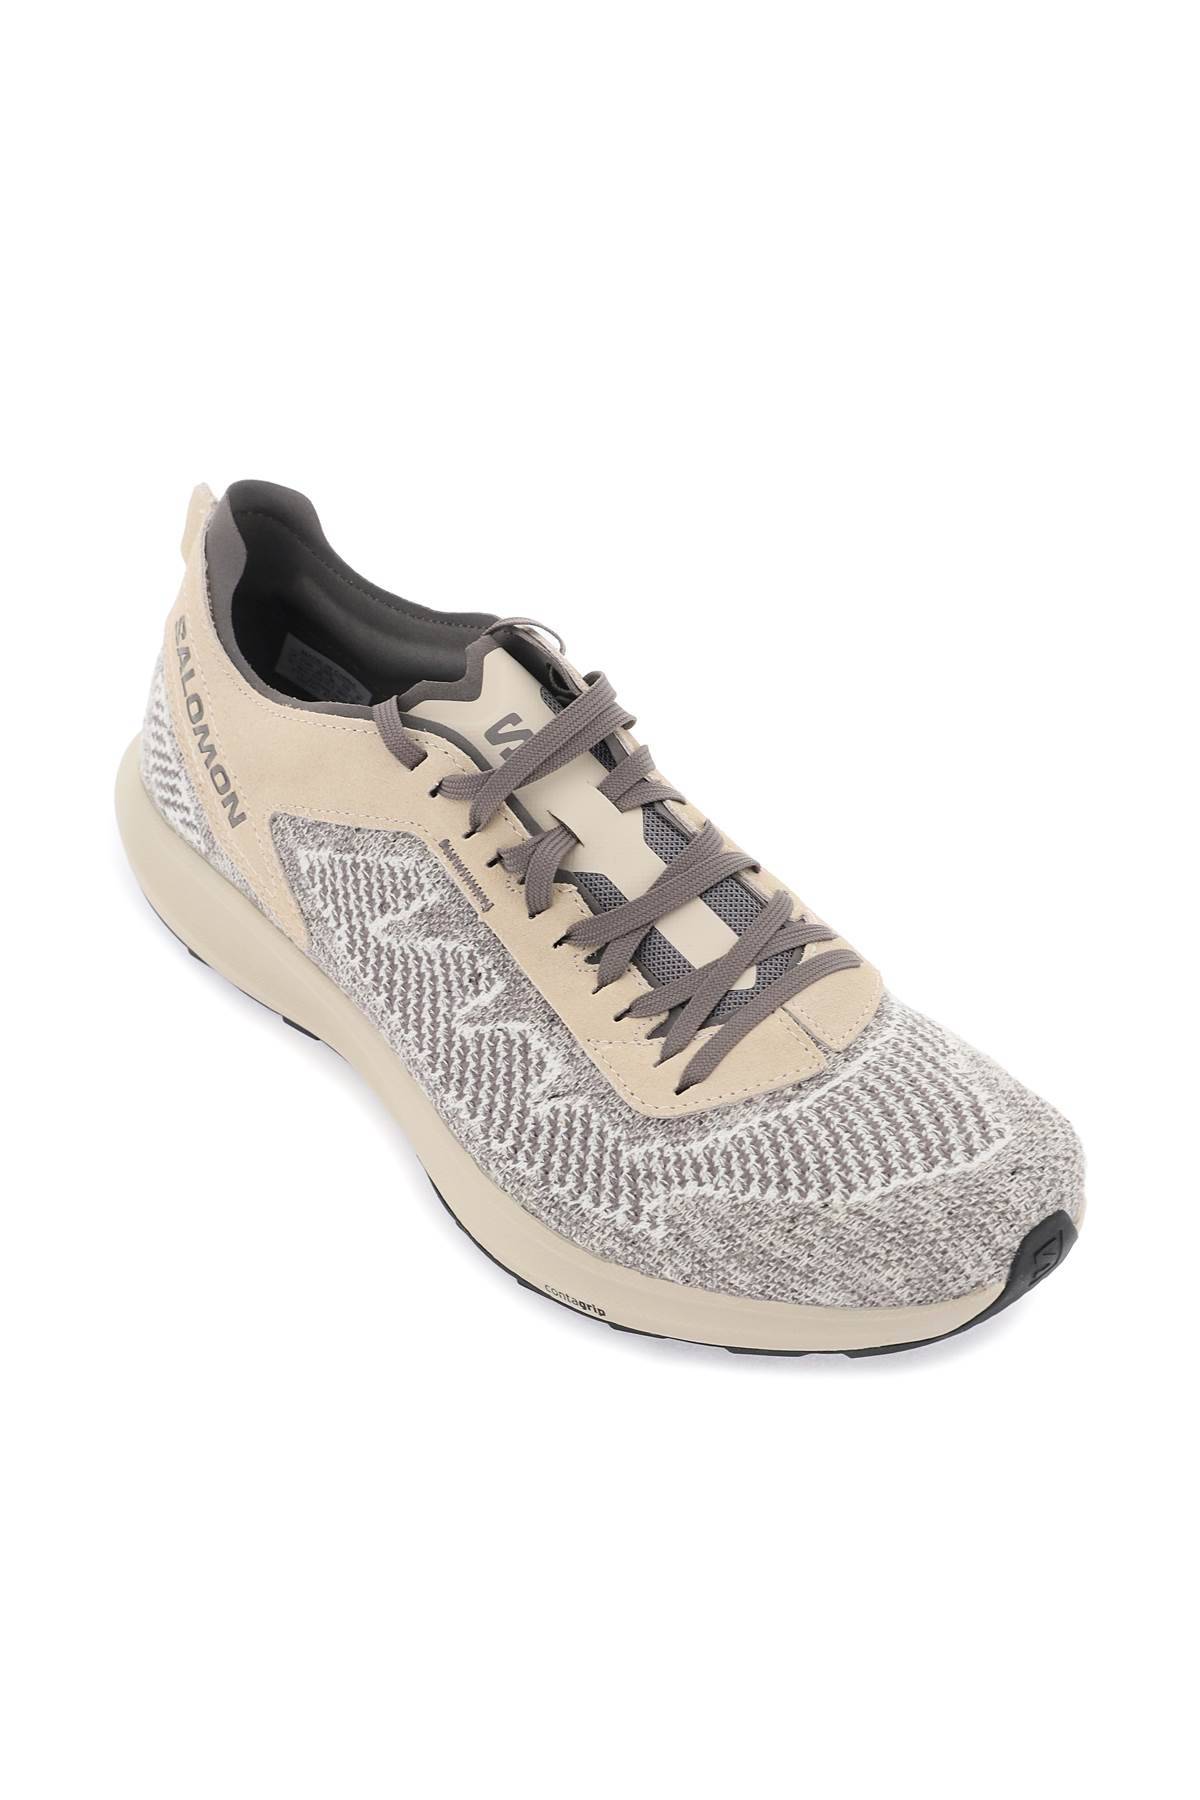 Shop Salomon Pulsar Prg Sneakers In Beige,grey